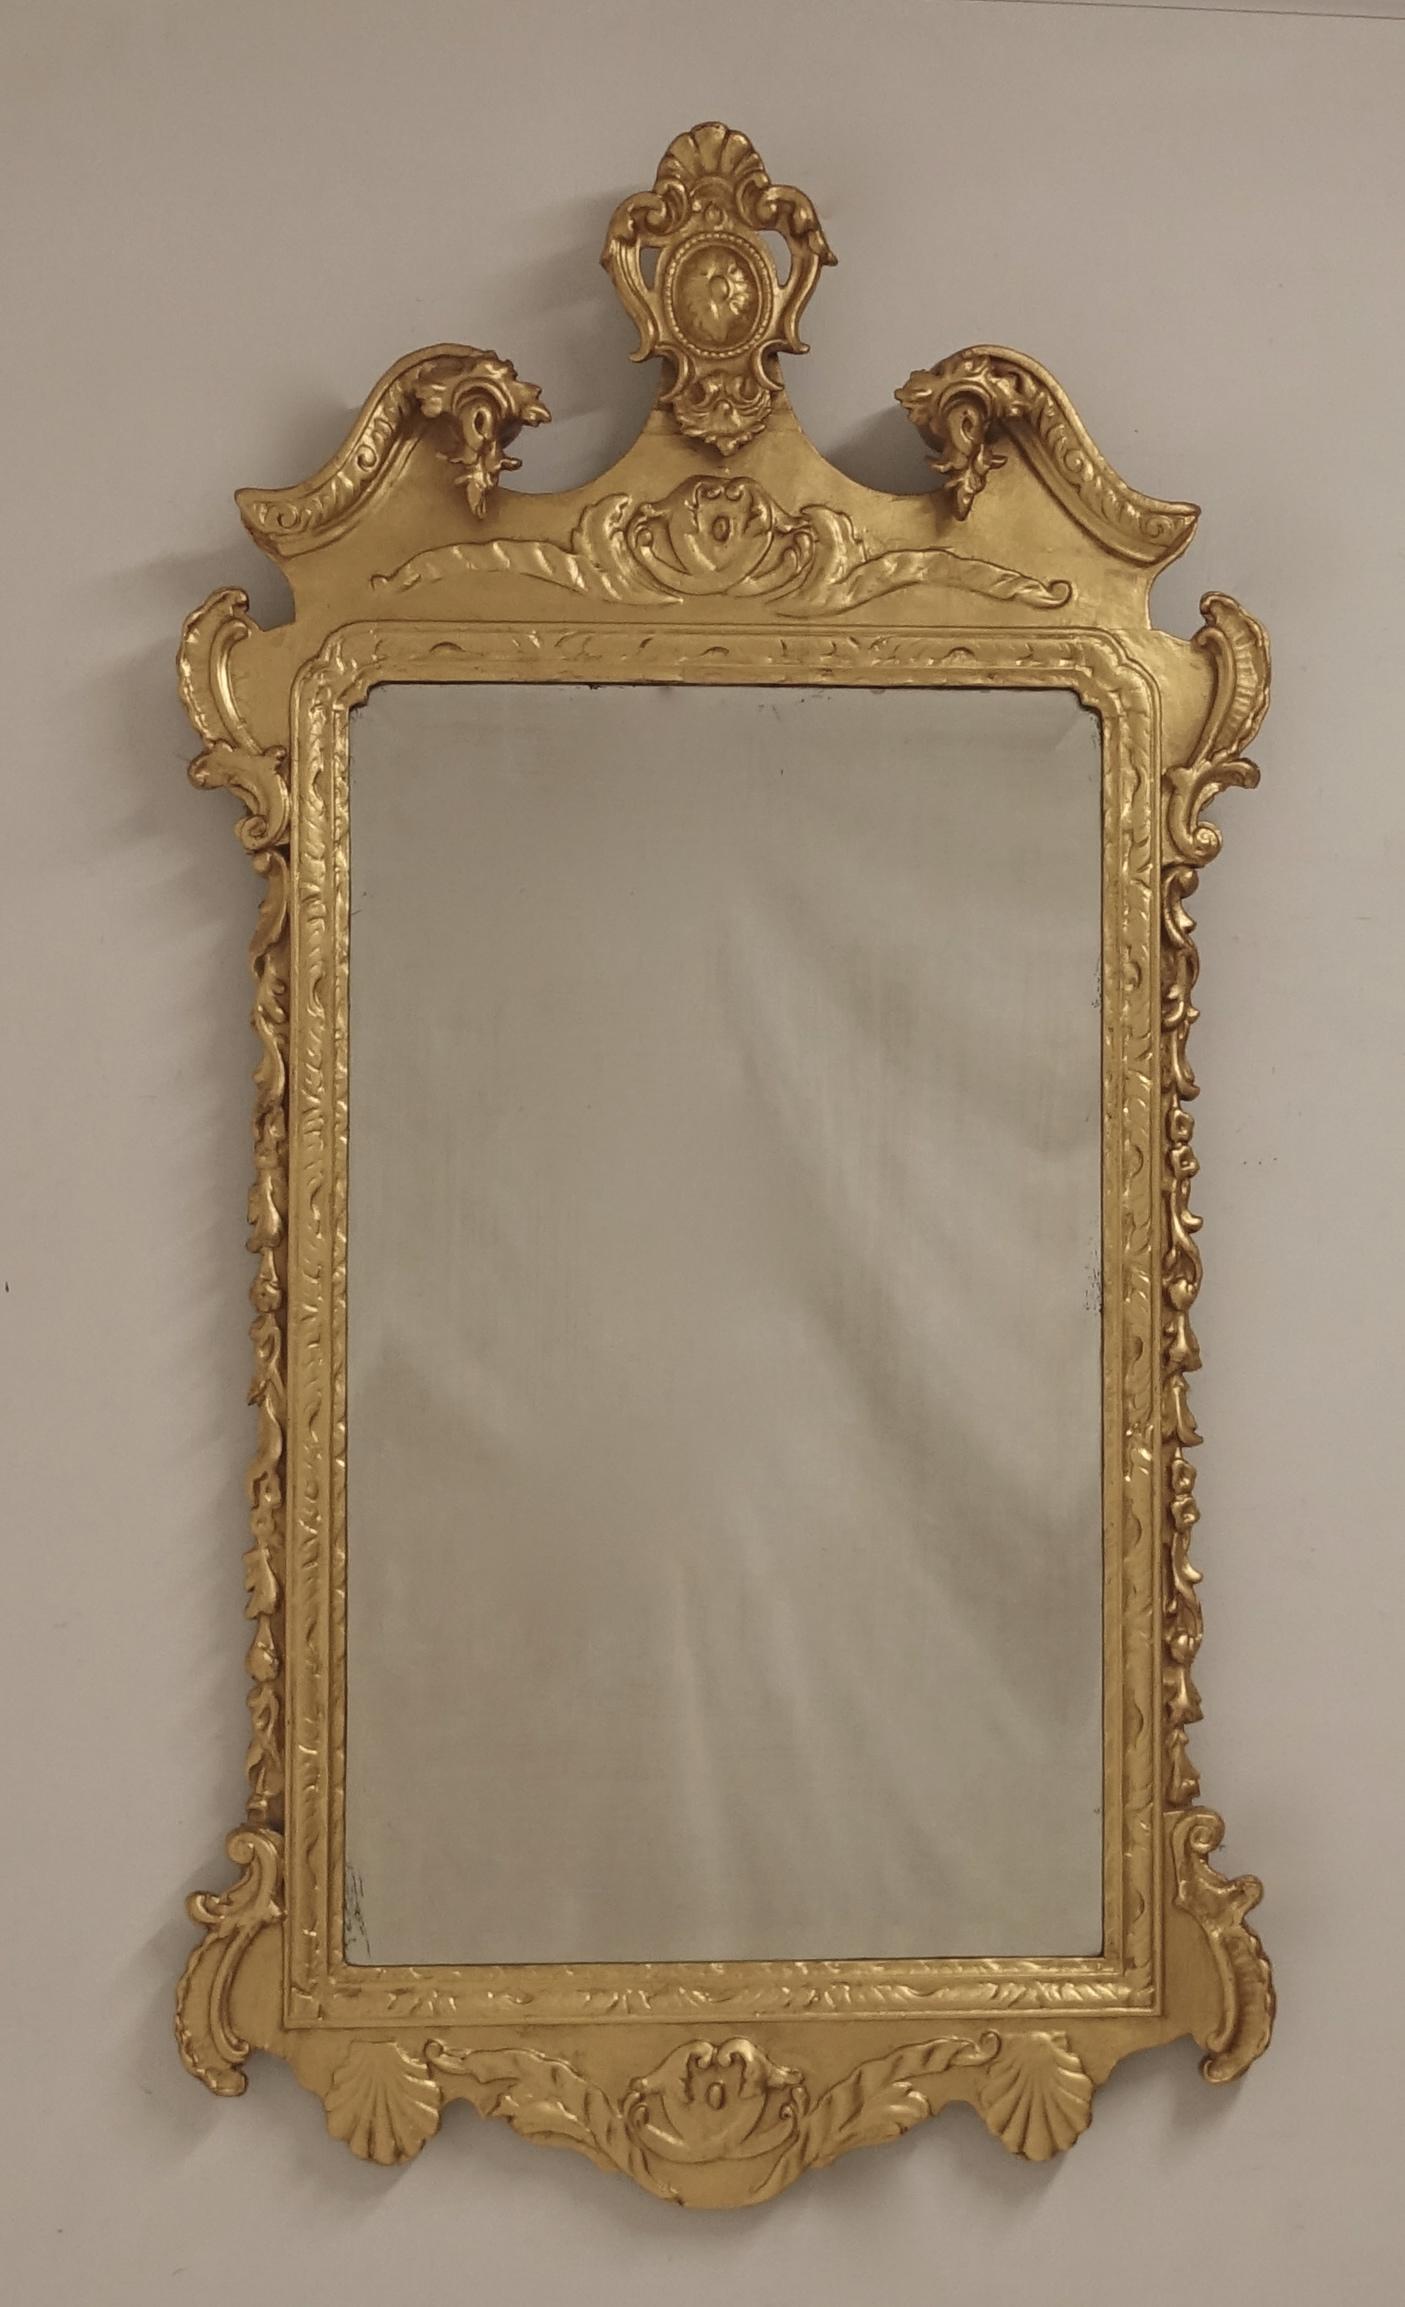 Miroir mural ou de cheminée en bois doré de style géorgien du milieu du 19e siècle avec plaque de miroir d'origine.
Dorure rafraîchie au 20e siècle.
En très bon état d'ancienneté.